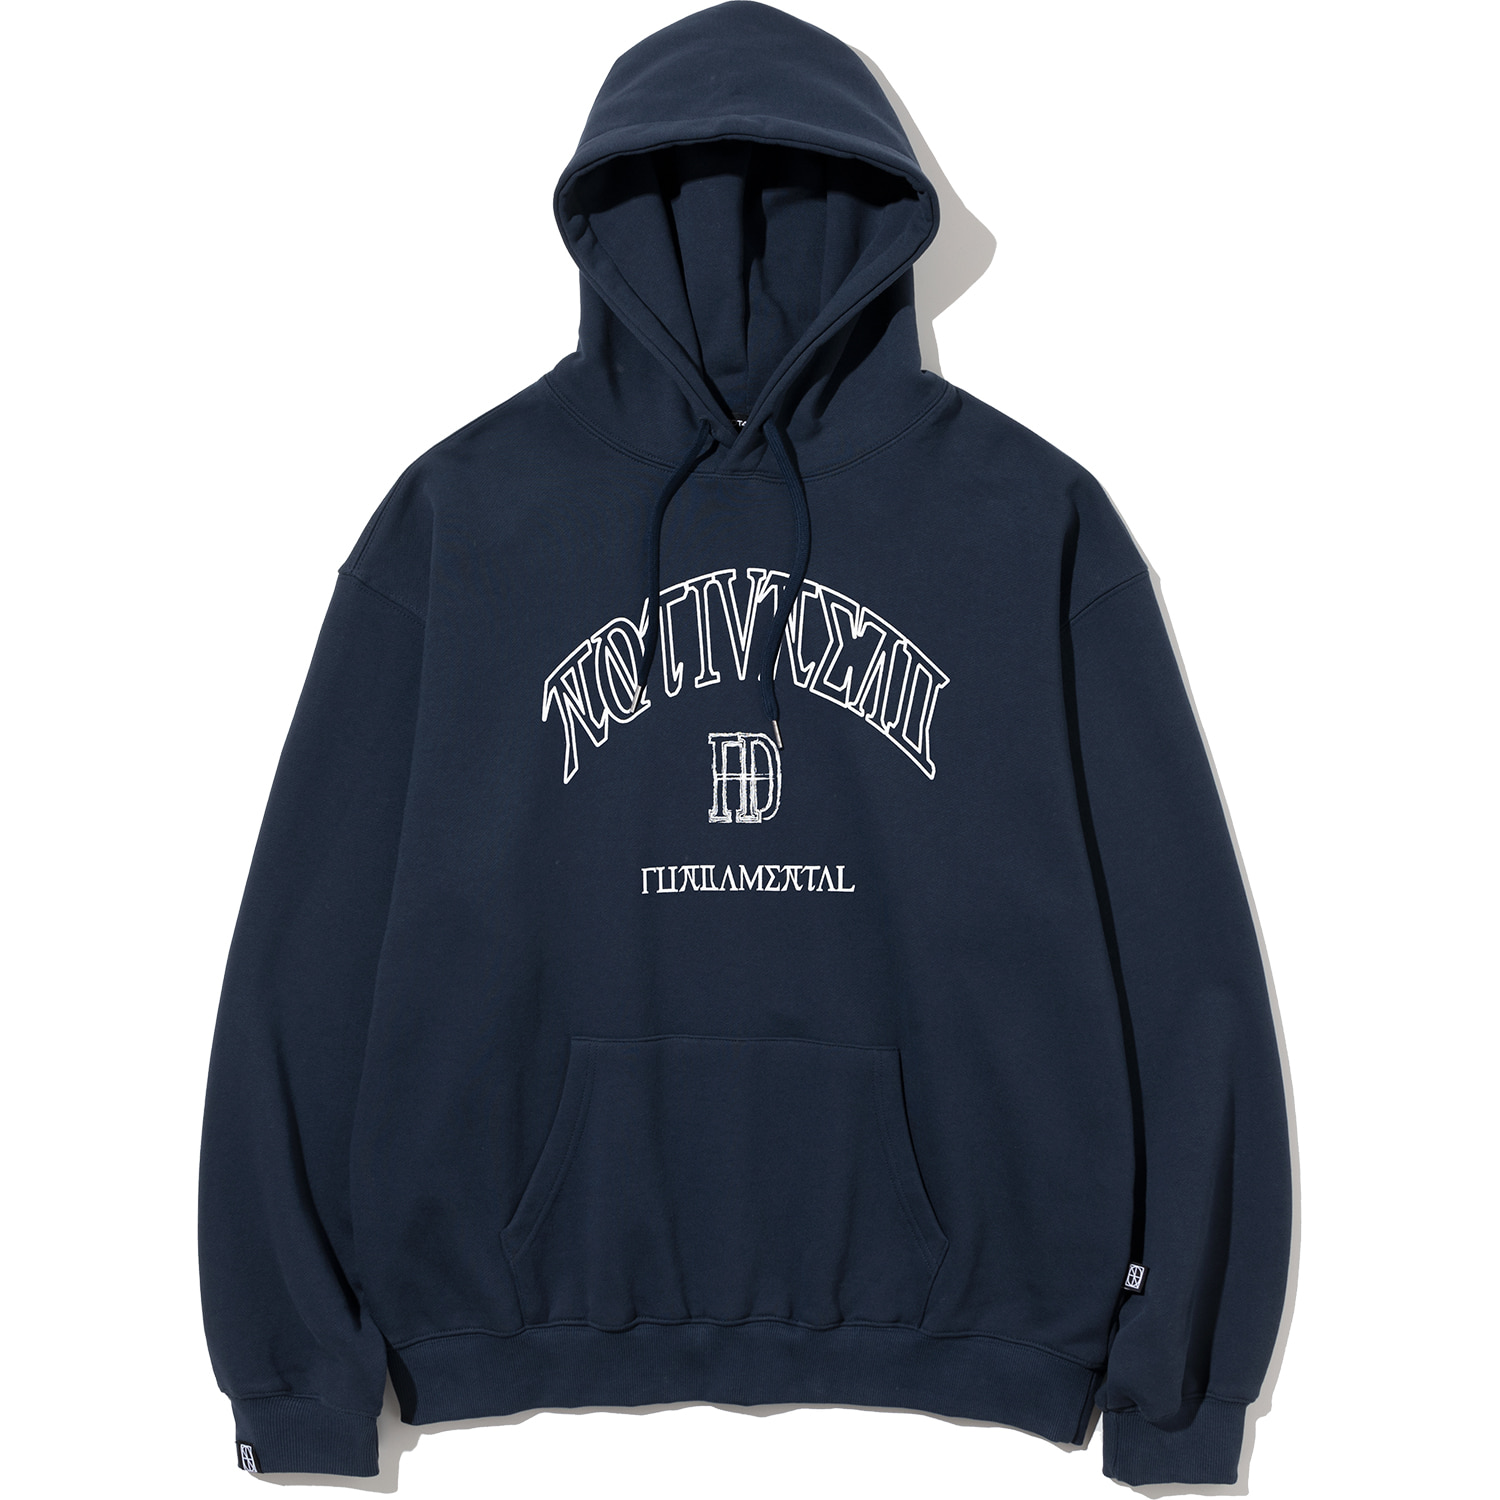 Arch D Logo Pullover Hood - Navy,NOT4NERD